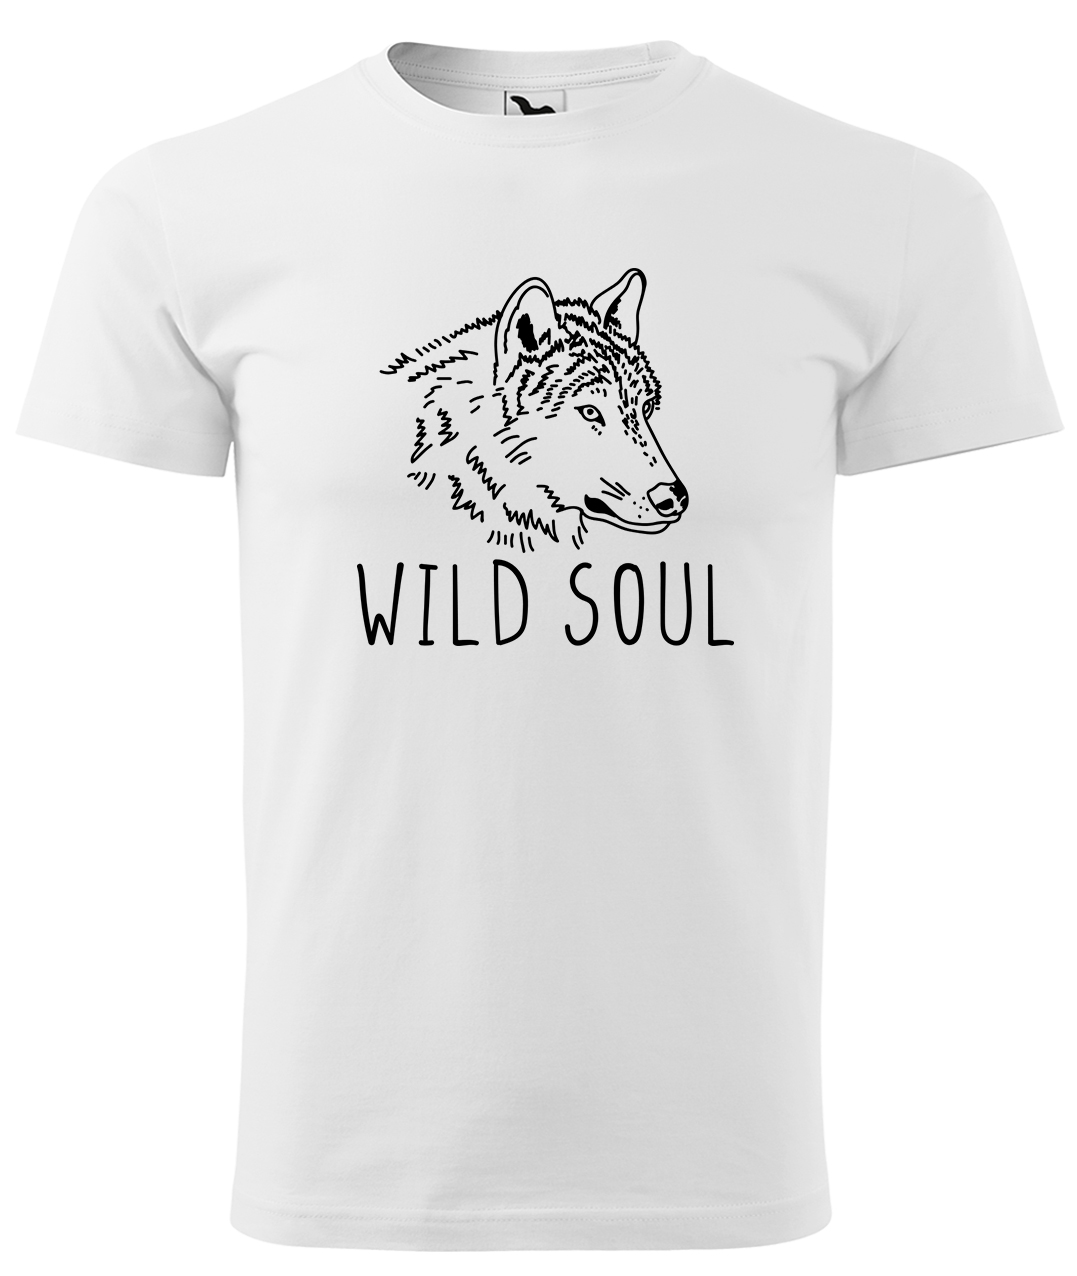 Dětské tričko s vlkem - Wild soul Velikost: 4 roky / 110 cm, Barva: Bílá (00), Délka rukávu: Krátký rukáv